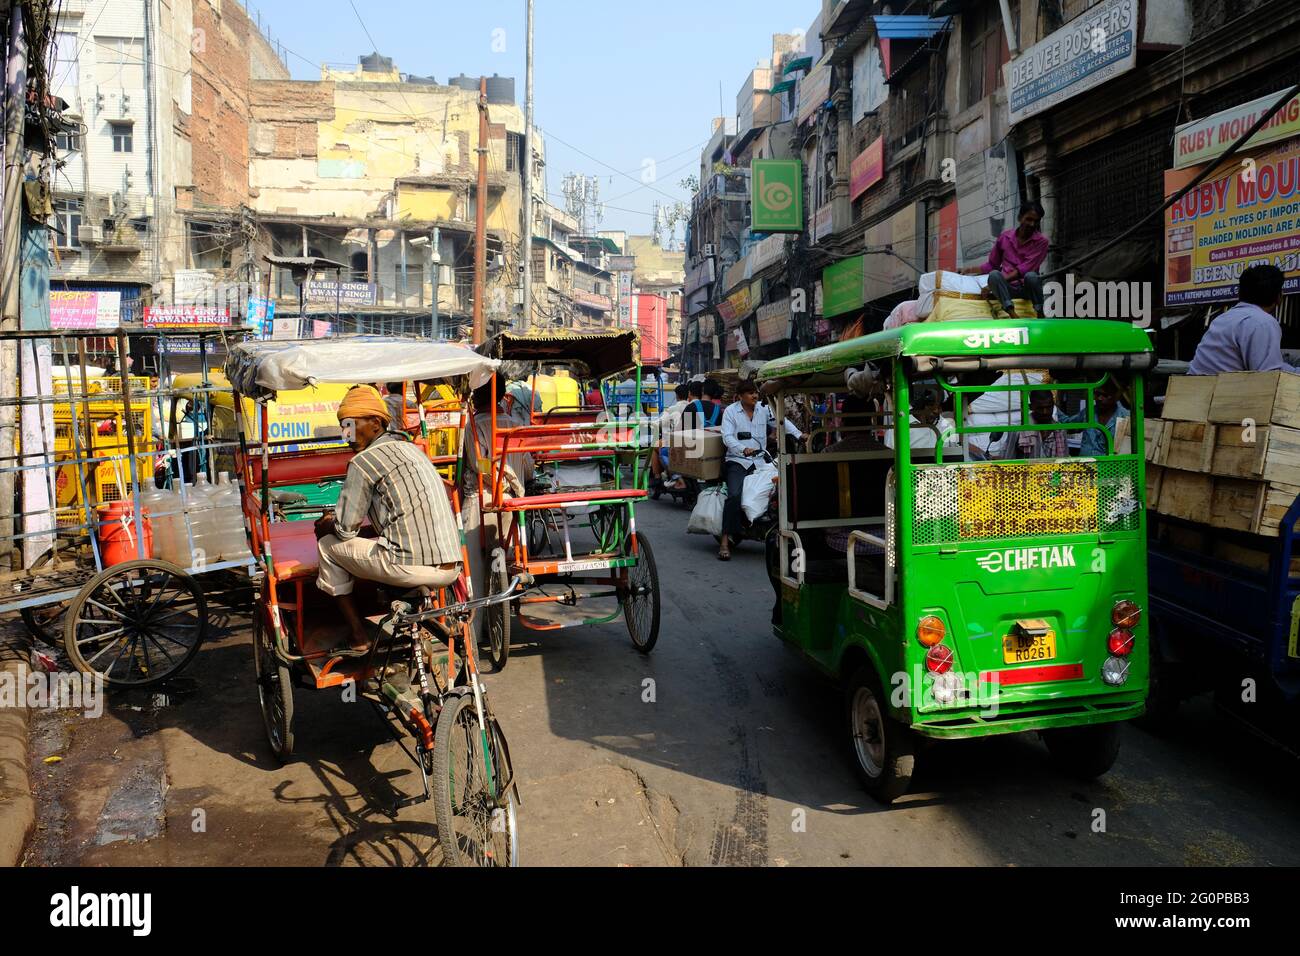 India Delhi - Daily Street Life of Old Delhi Stock Photo